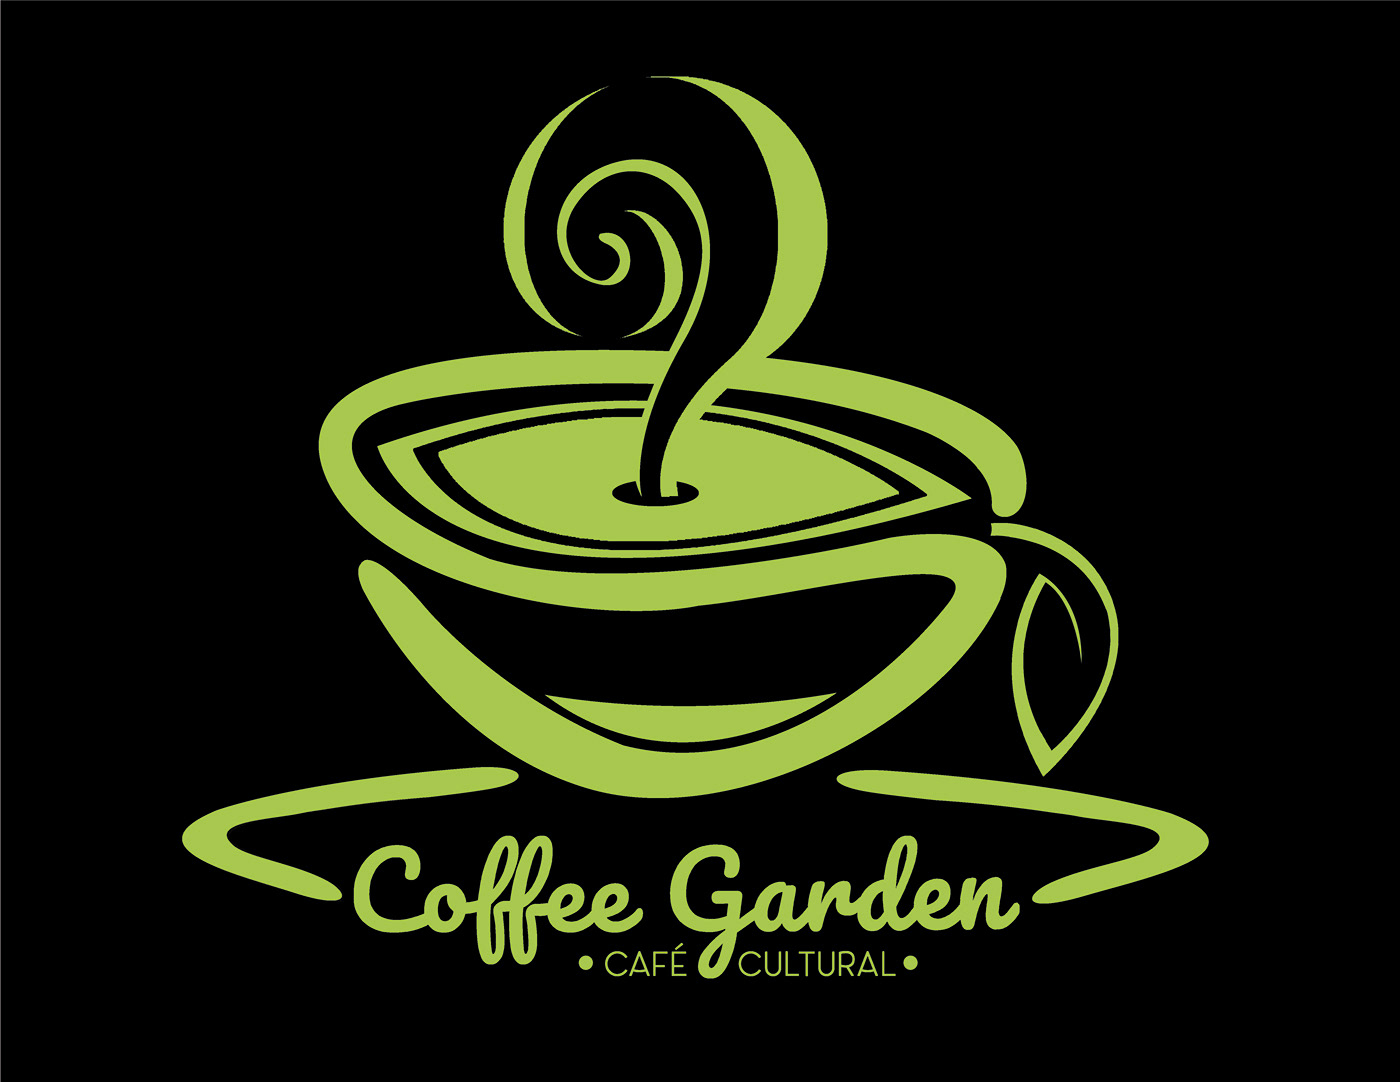 diseño de logo logo de café usb isotipo Isologo cafe